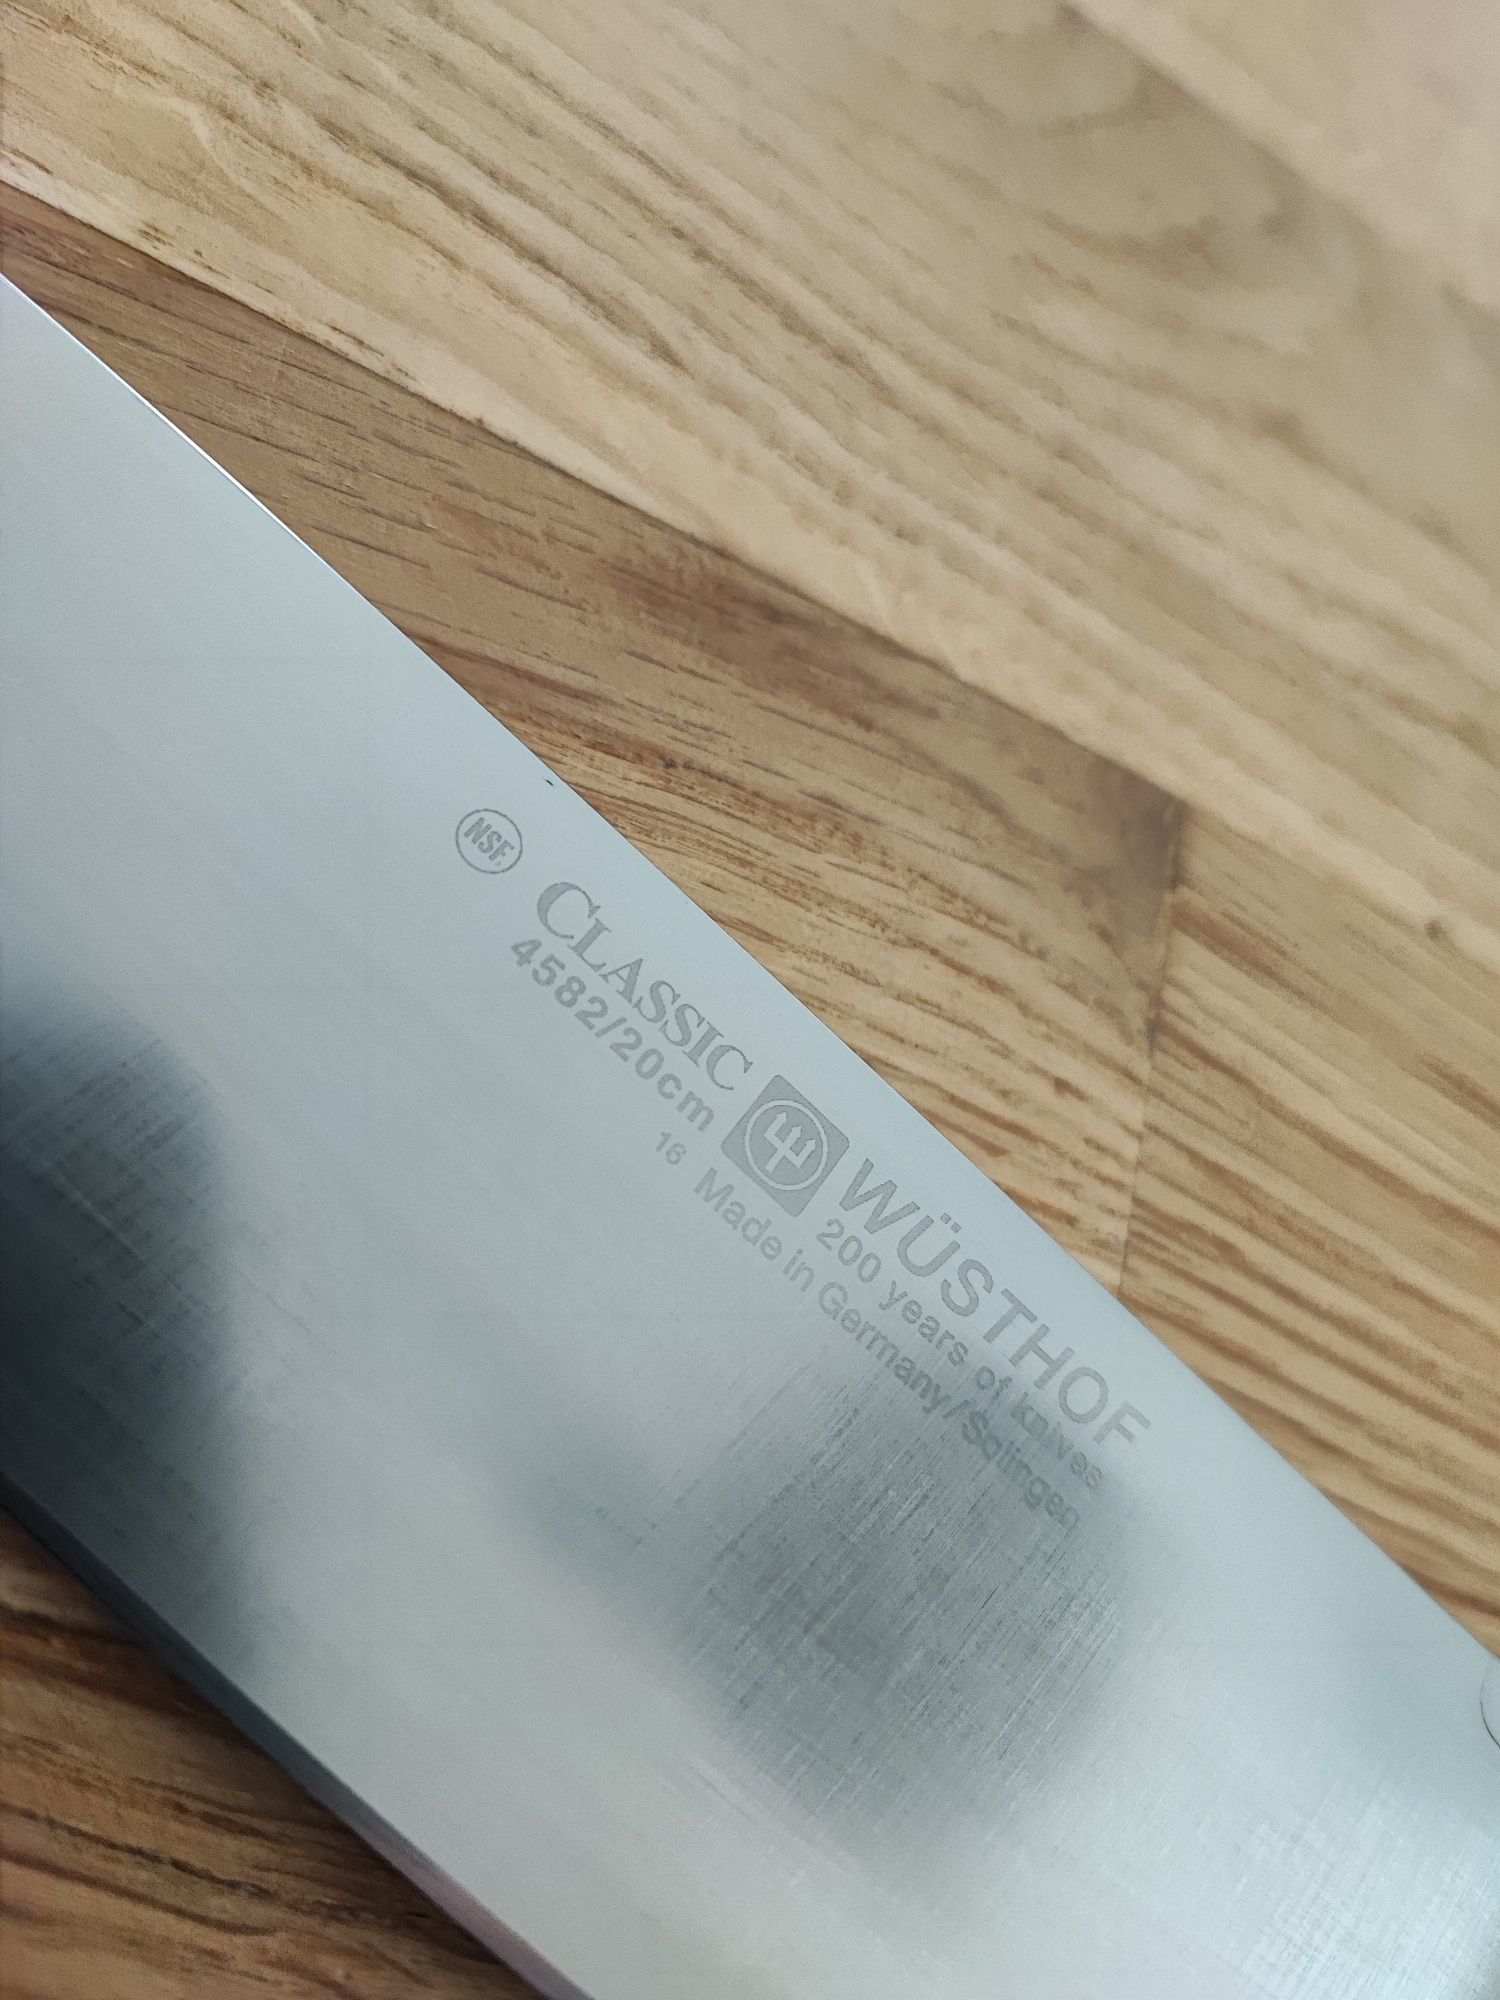 Wusthof nóż szefa kuchni 20cm